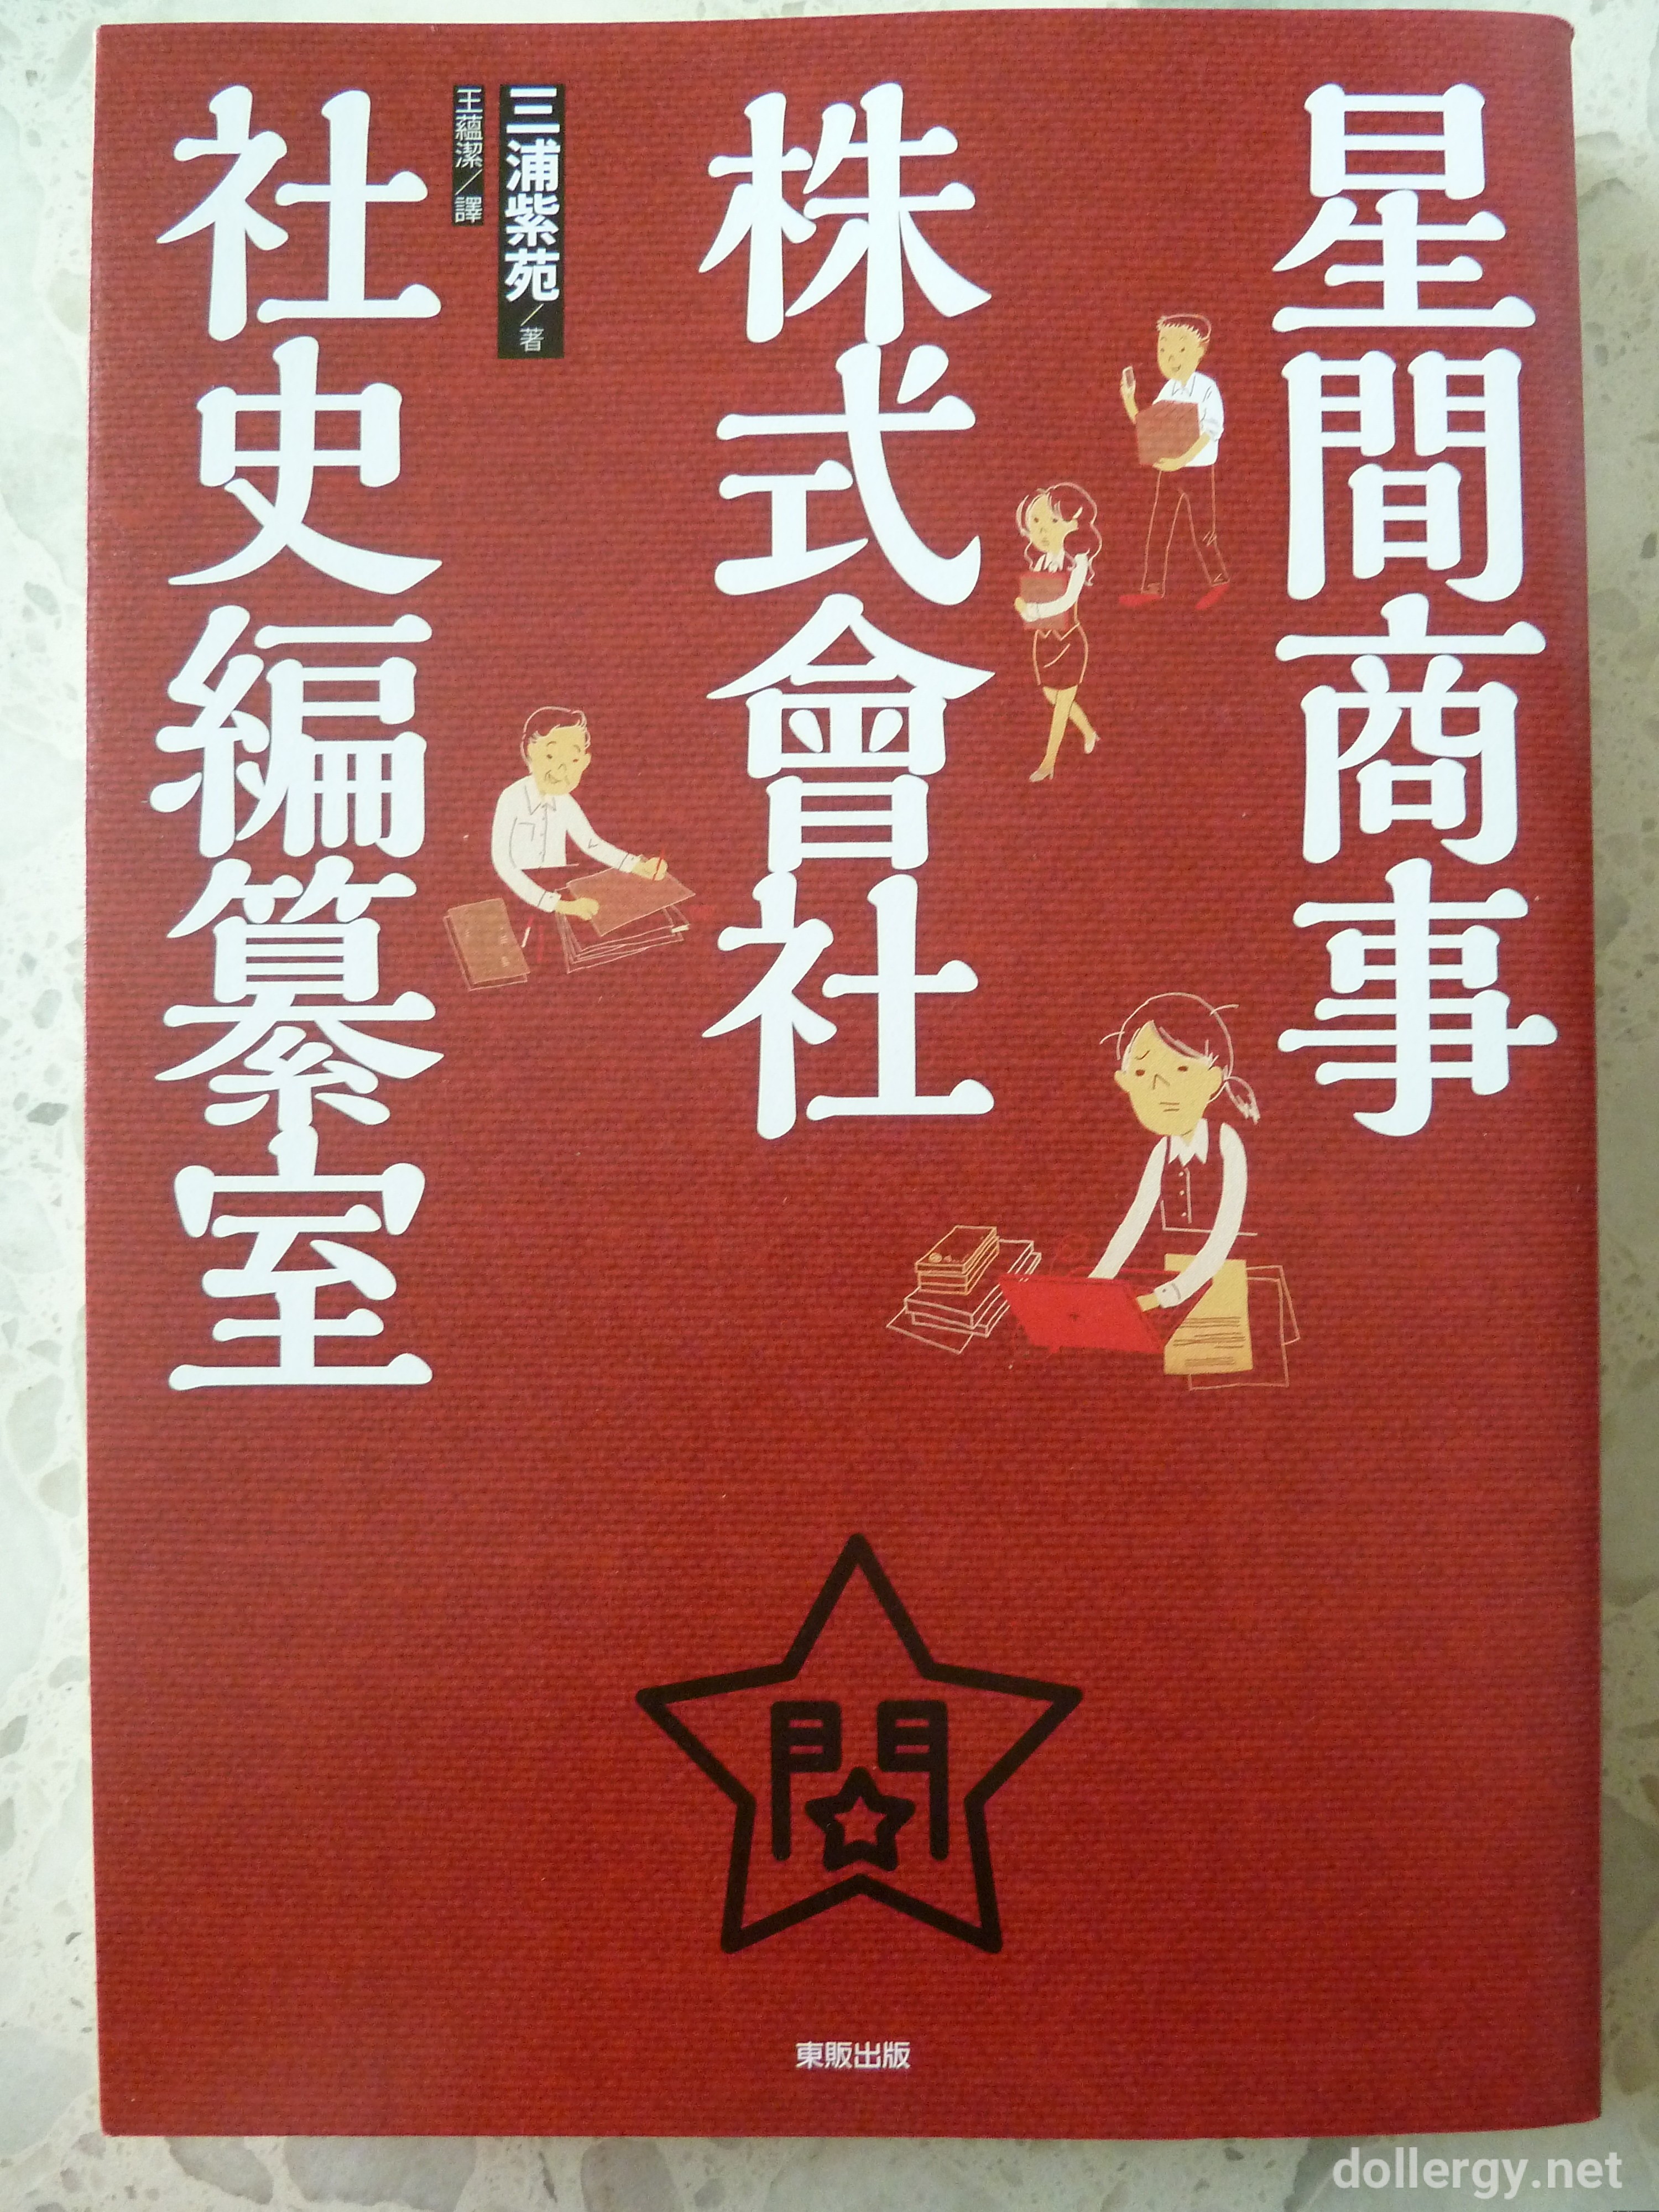 星間商事株式會社社史編纂室 Book Cover